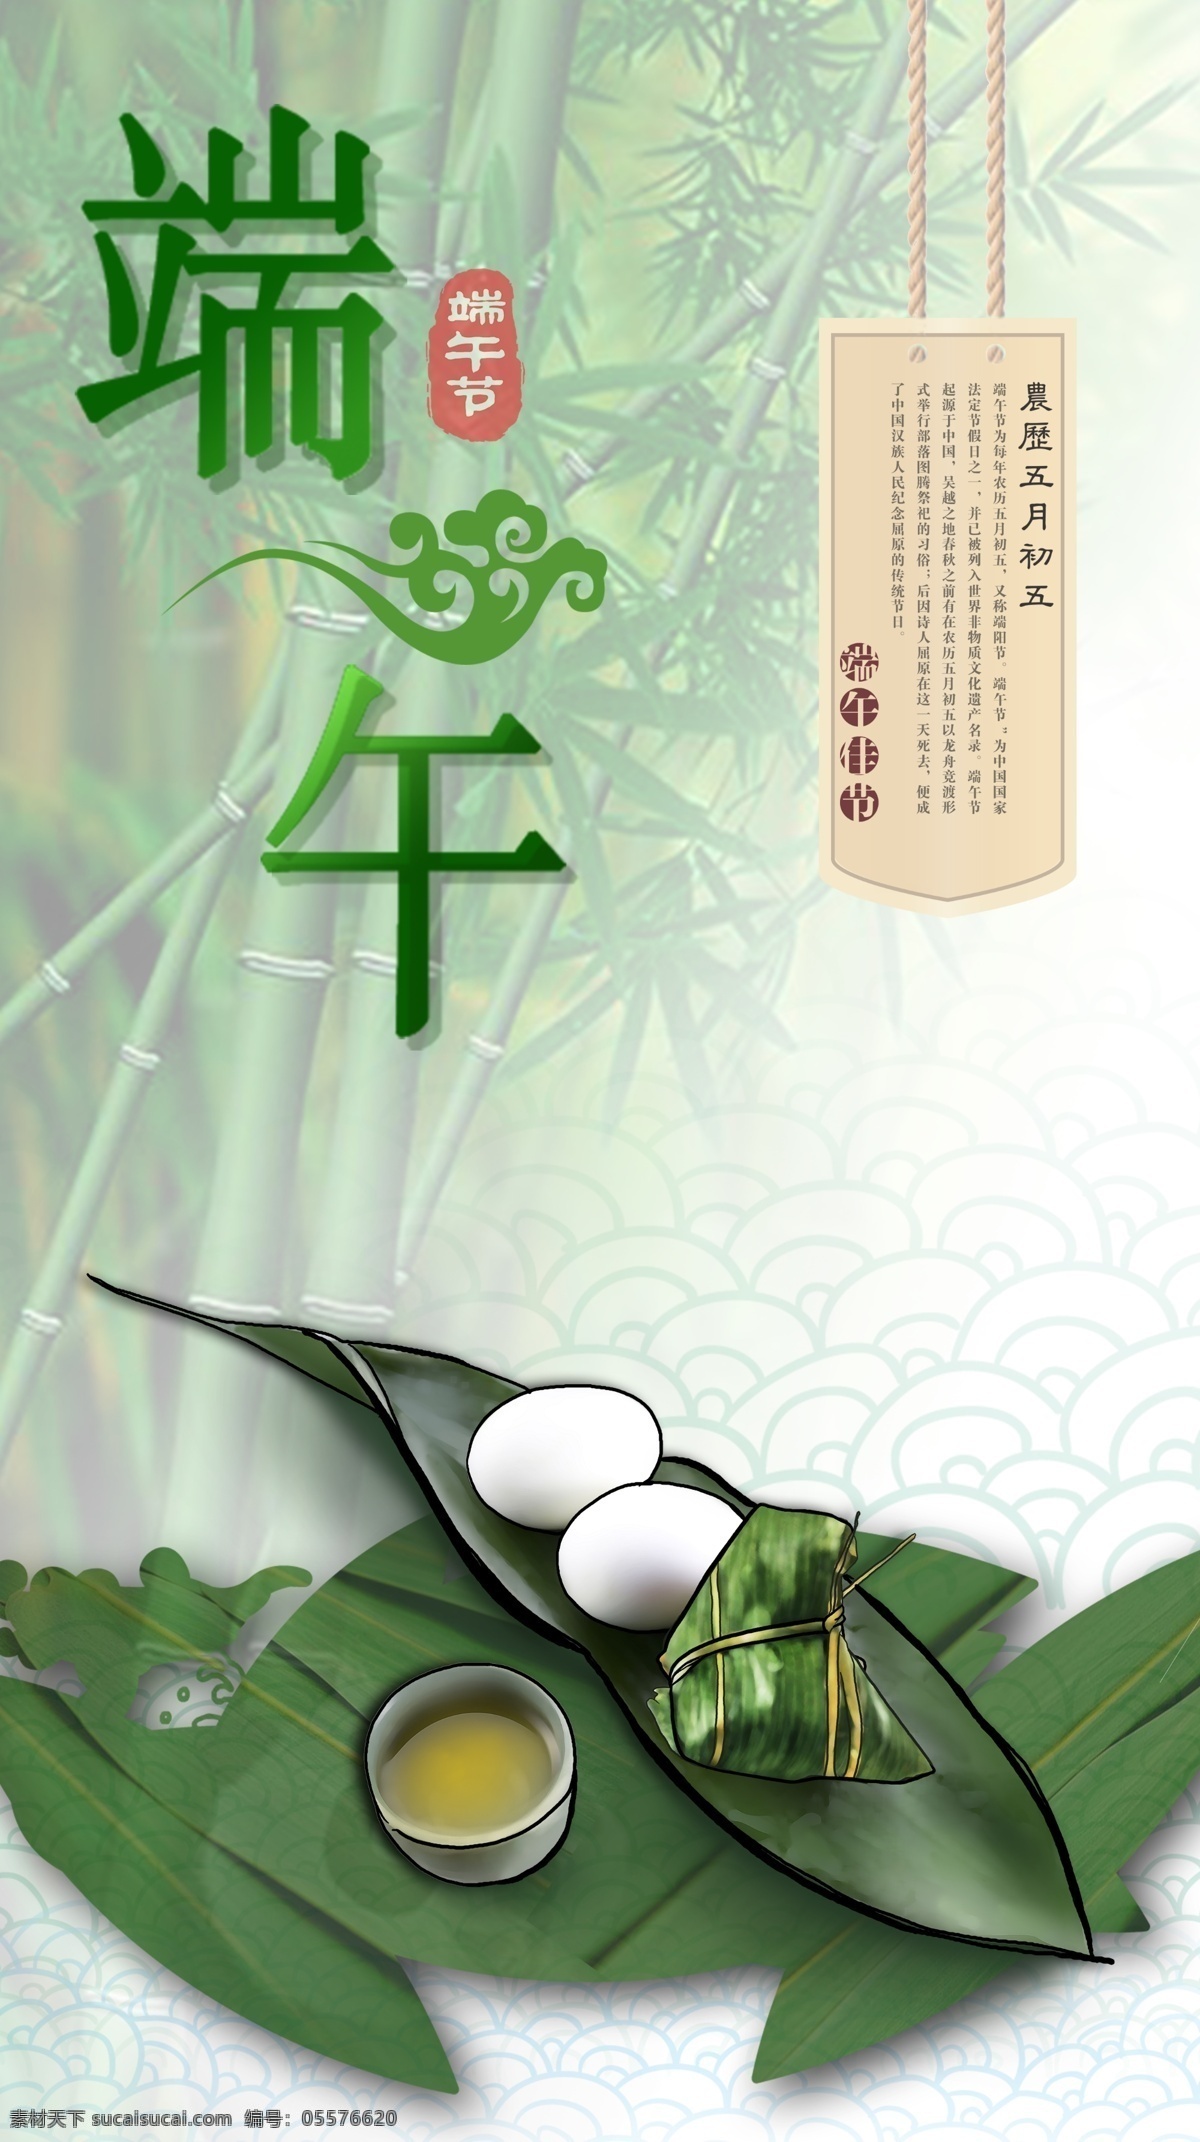 端午节 节日 介绍 海报 竹子 清新风格